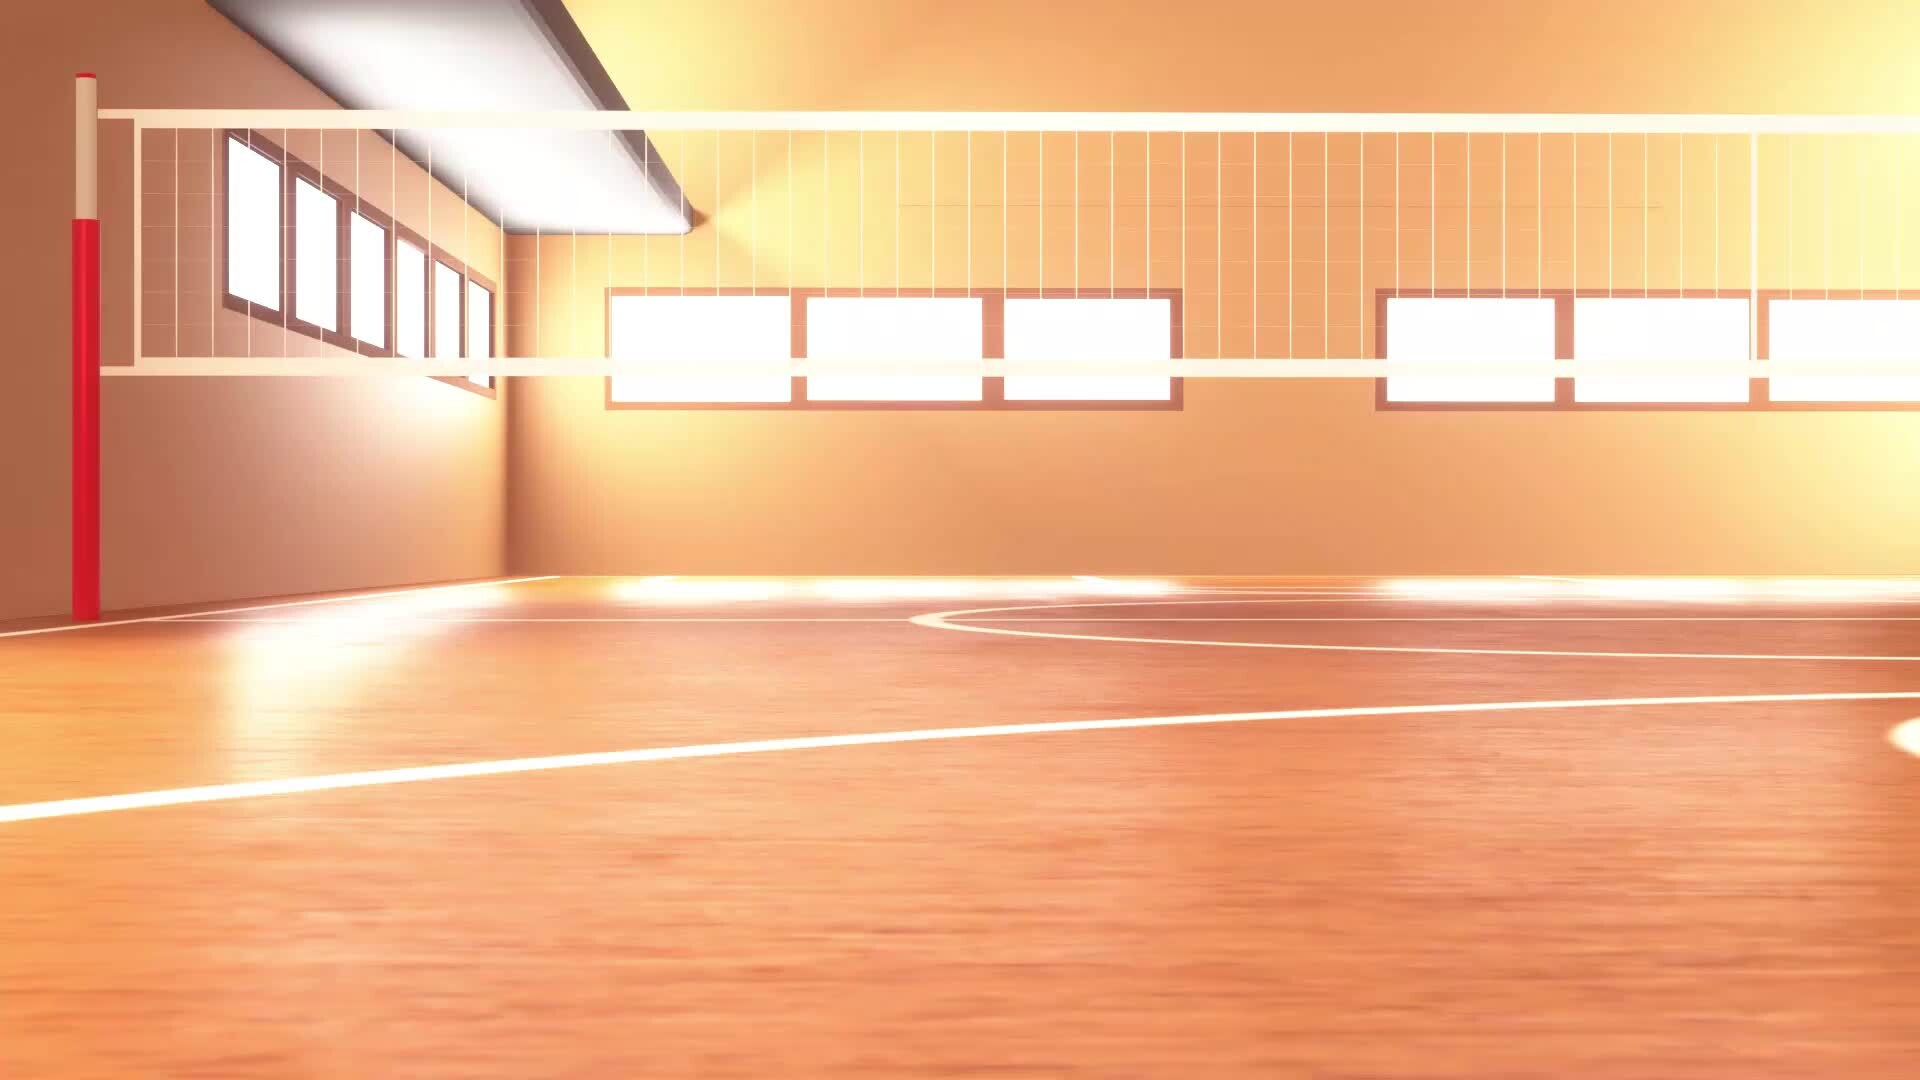 Ảnh Volleyball court background anime hấp dẫn và sinh động